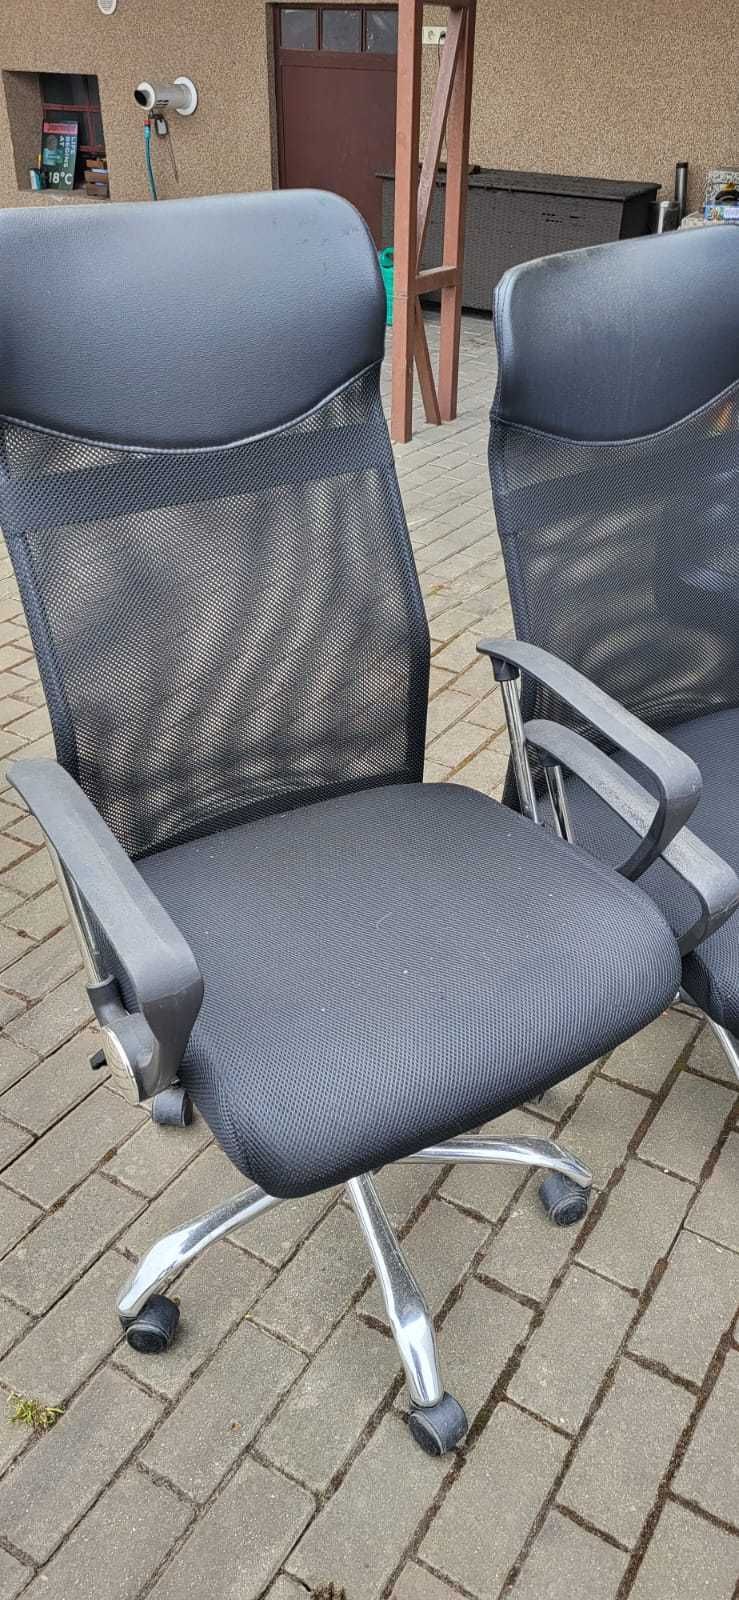 Krzesła biurowe czarne